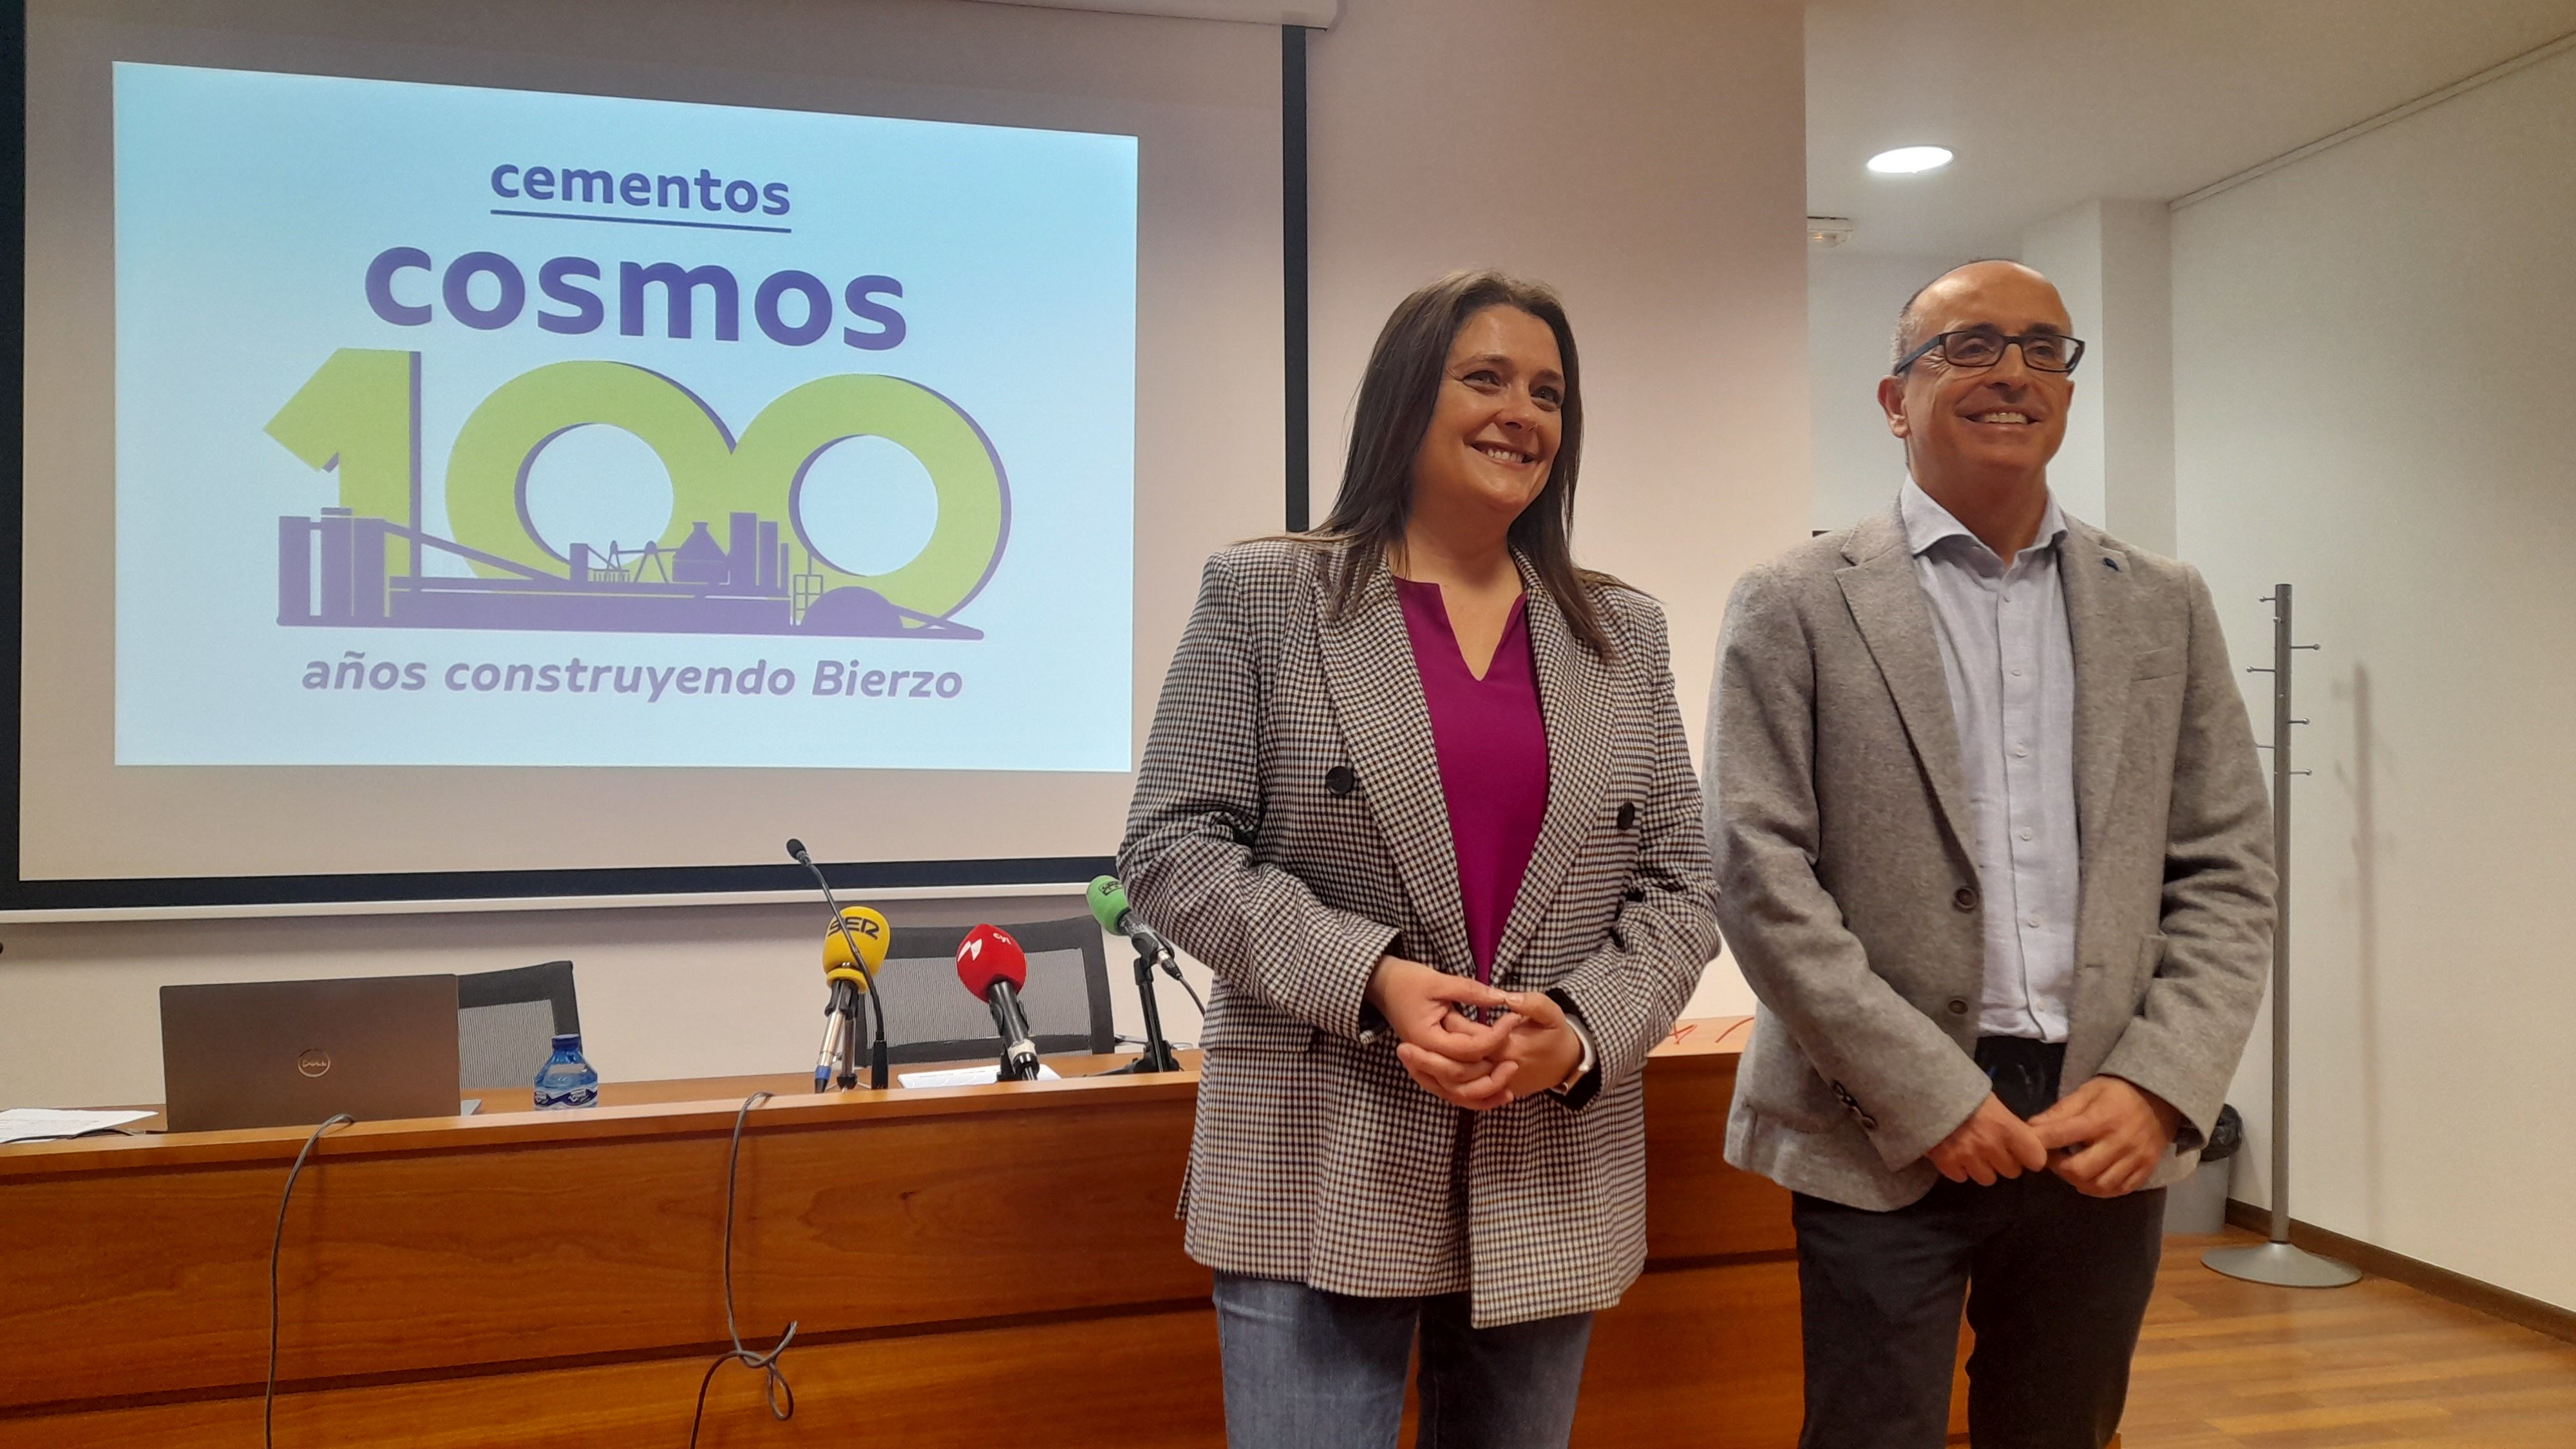 Vetania López, delegada de prensa de Cosmos, con el director de la fábrica, Jaime Santoalla presentando las actividades del centenario. | MAR IGLESIAS